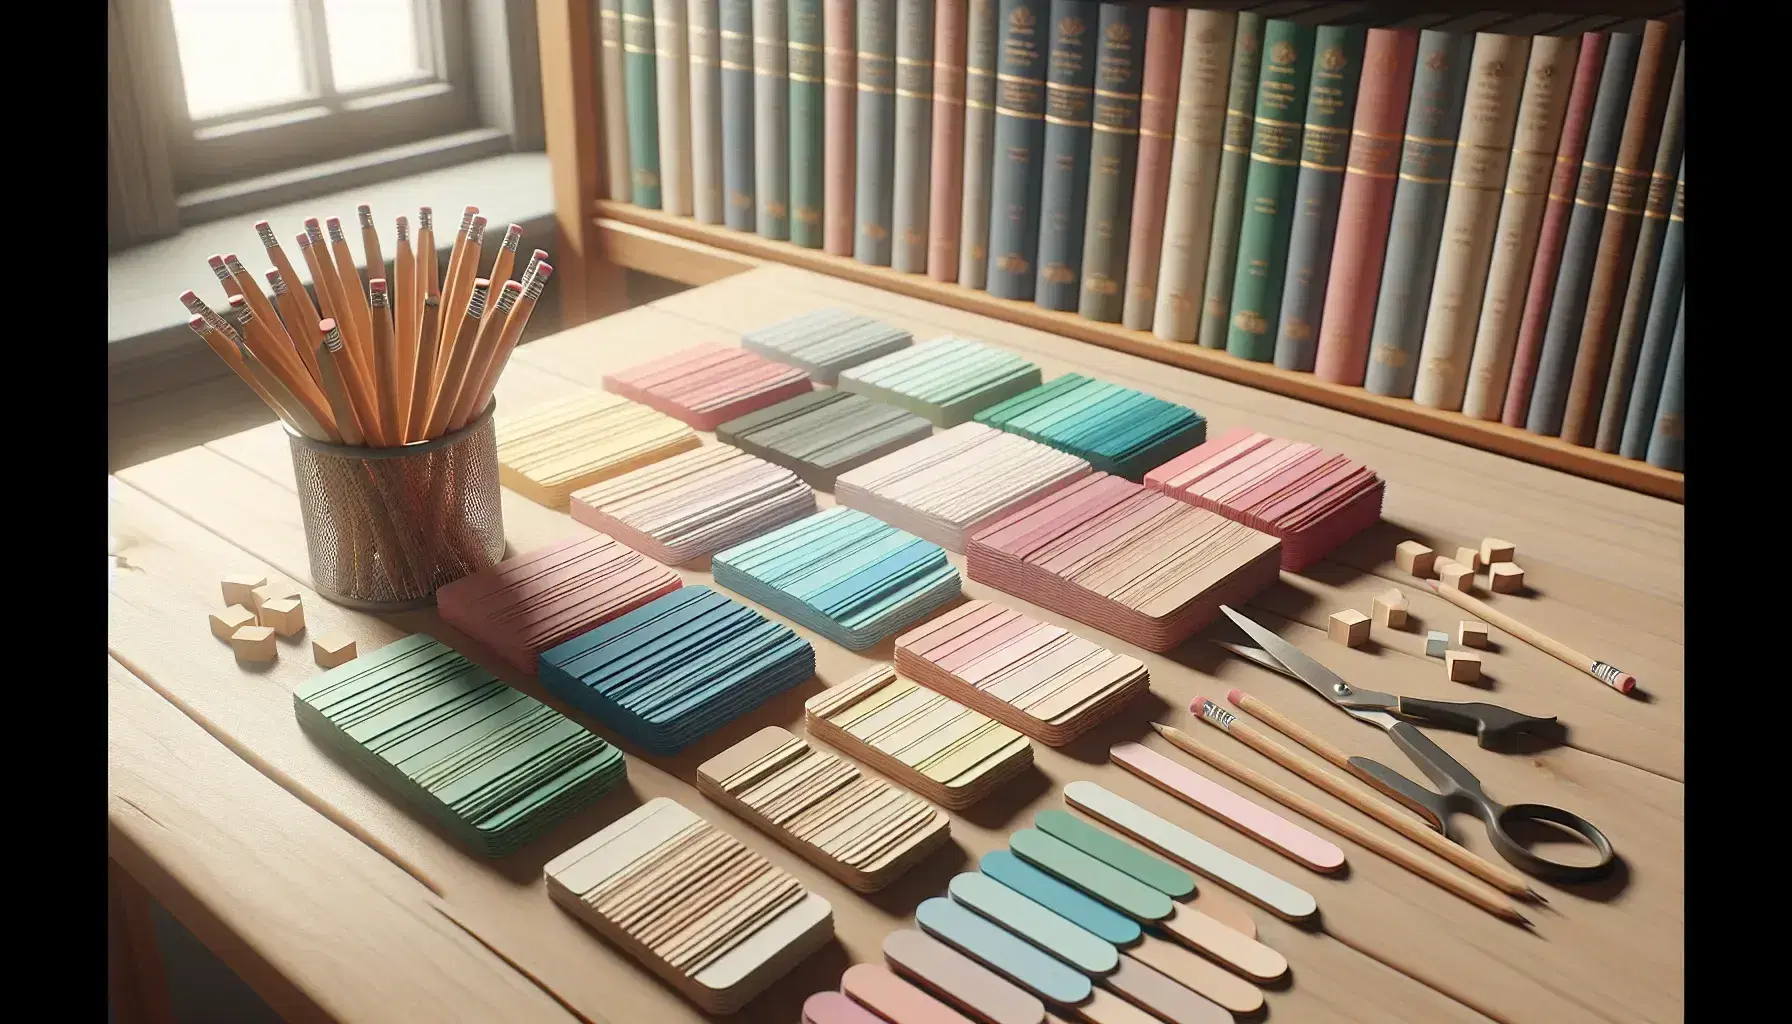 Mesa de madera clara con fichas de cartulina en tonos pastel, lápices de madera y tijeras, fondo desenfocado con estantería y libros.